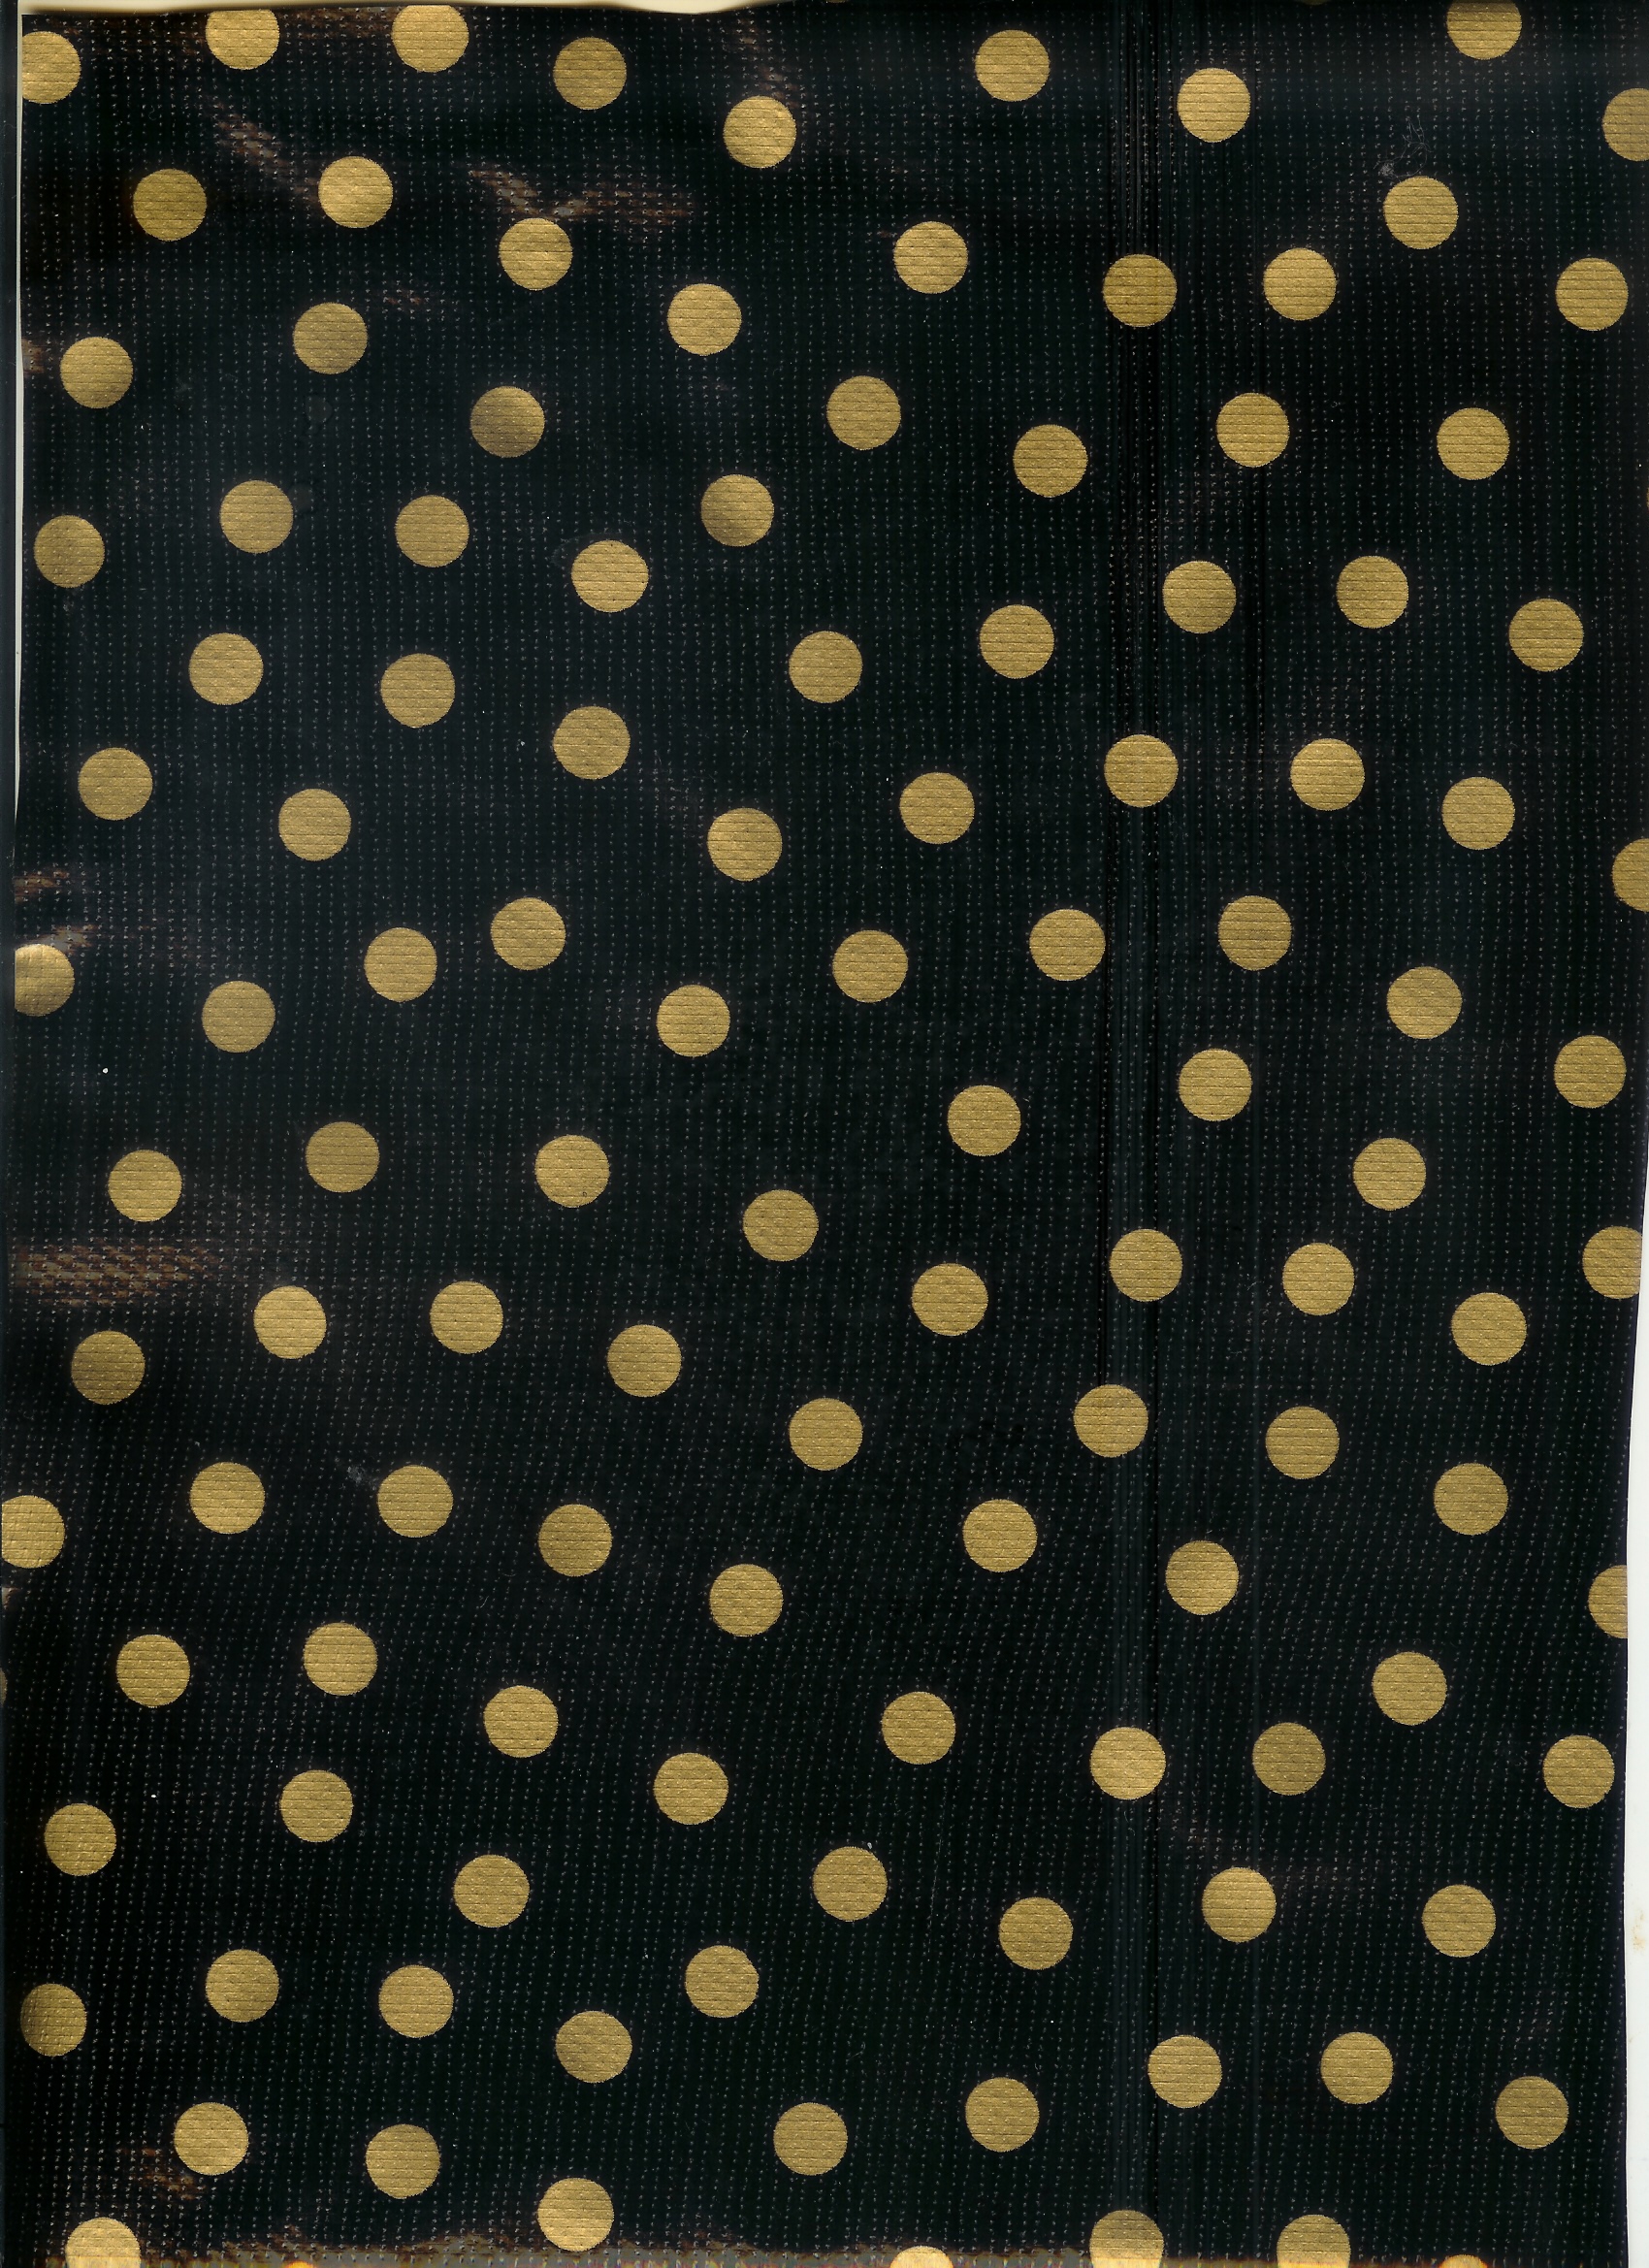 Gold Polka Dot Wallpaper Black And